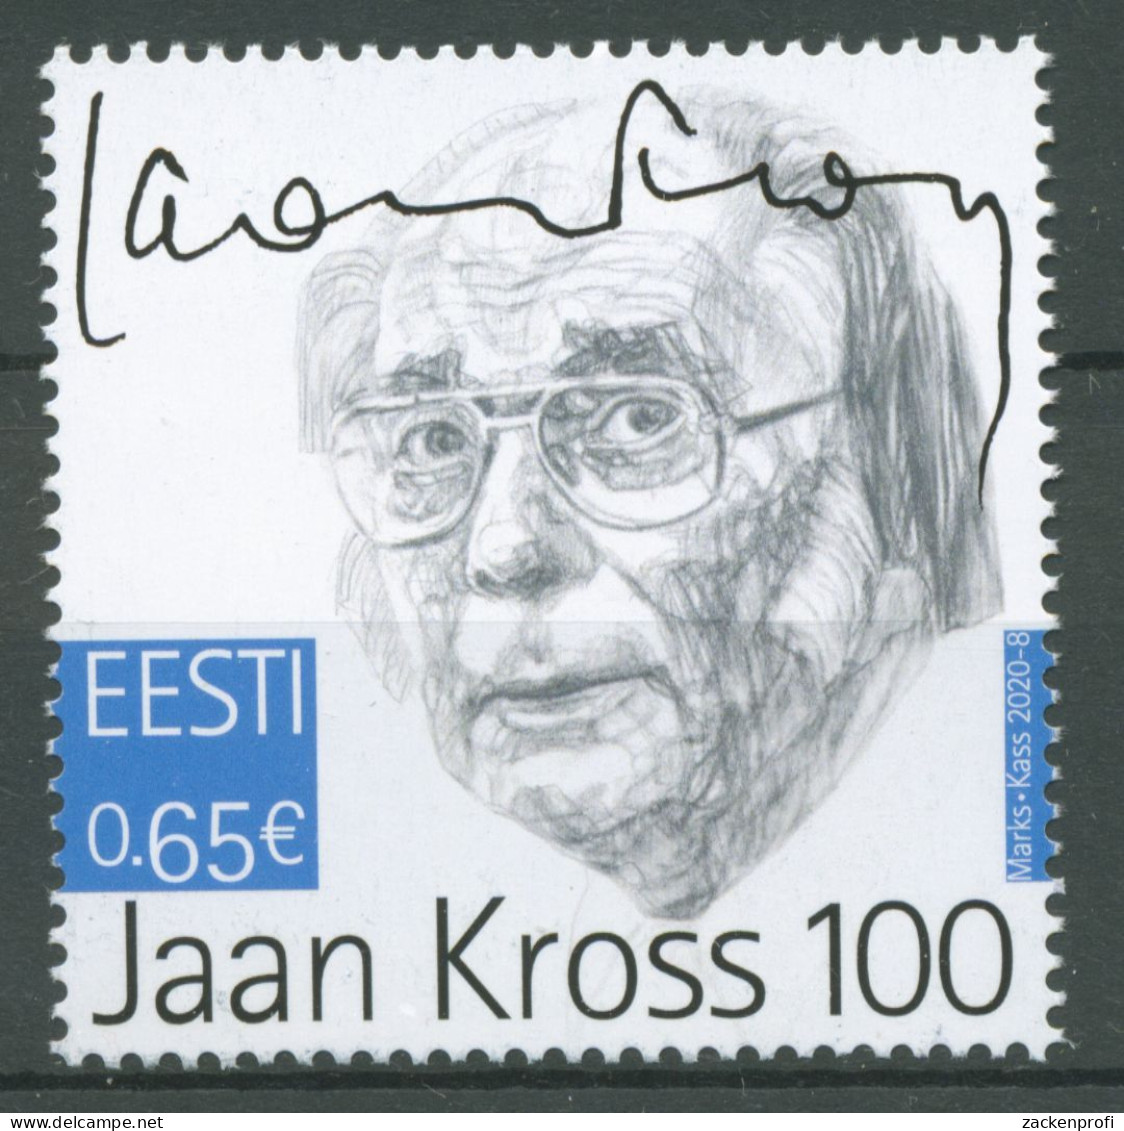 Estland 2020 Persönlichkeiten Schriftsteller Jaan Kross 978 Postfrisch - Estonie